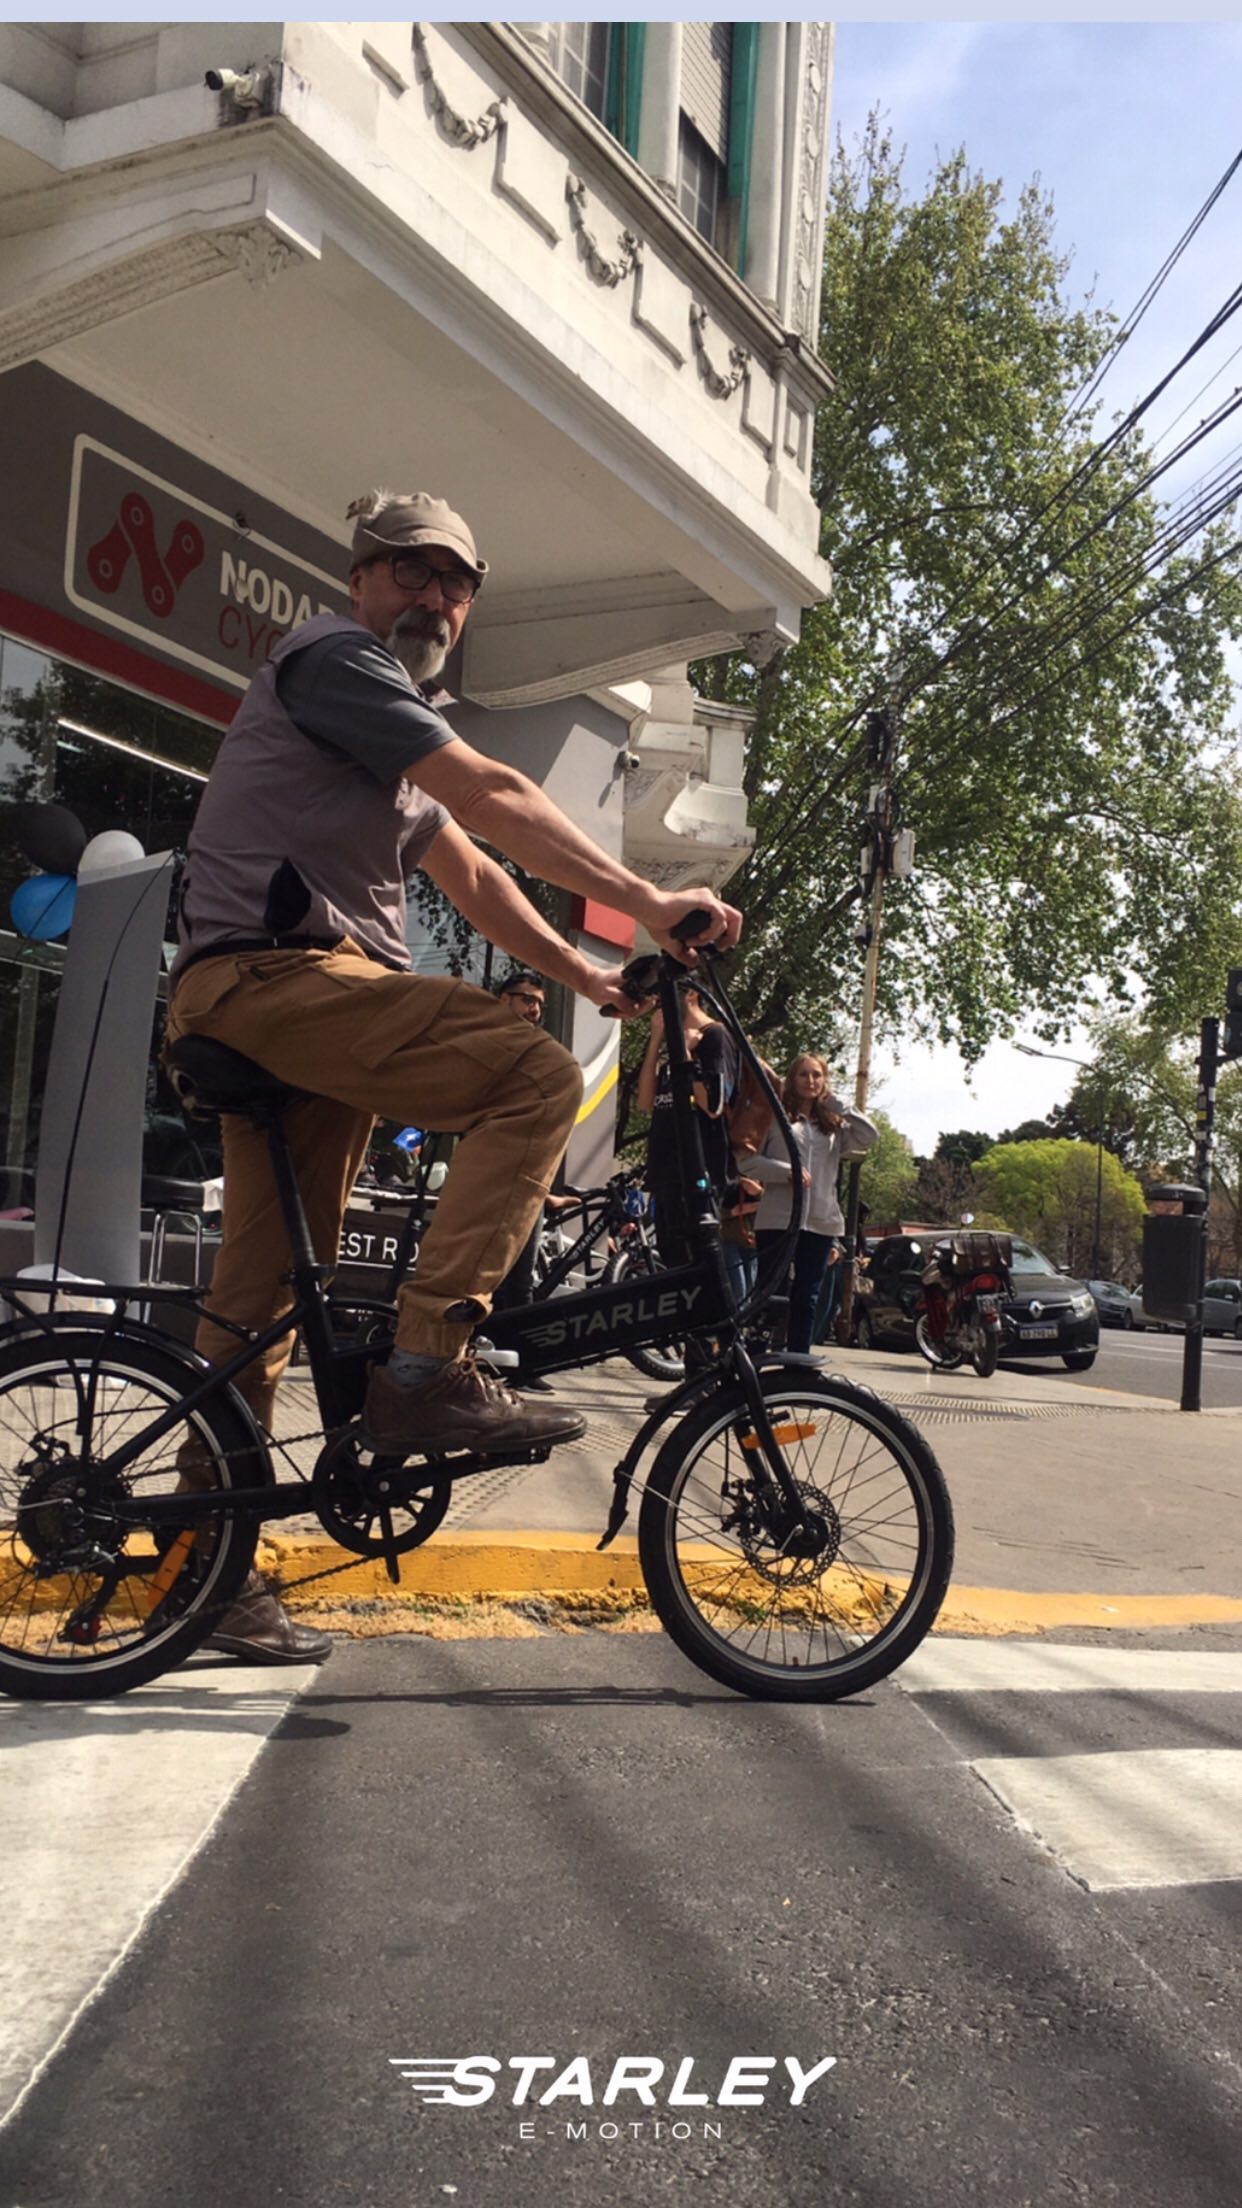 Celebramos un nuevo 𝗧𝗘𝗦𝗧 𝗥𝗜𝗗𝗘⚡️por la semana de la movilidad sustentable ♻️🌎

Gracias a los amigos de @nodari.cycles y a todas las personas que se acercaron a probar una E-Bike ! 

ʙᴜꜱᴄᴀᴍᴏꜱ ᴇꜱᴛɪᴍᴜʟᴀʀ ᴜɴ ᴄᴀᴍʙɪᴏ ᴇɴ ʟᴀ ᴍᴏᴠɪʟɪᴅᴀᴅ ʜᴜᴍᴀɴᴀ ᴅɪᴀʀɪᴀ 🚲🛴⚡️

⚡️•𝐒𝐭𝐚𝐫𝐥𝐞𝐲 𝐄-𝐌𝐨𝐭𝐢𝐨𝐧•⚡️
.
.
.
.
.
#starley #semanadelamovilidadsustentable #ebike #argentina #calidad #diseño #tecnologia #bicielectrica